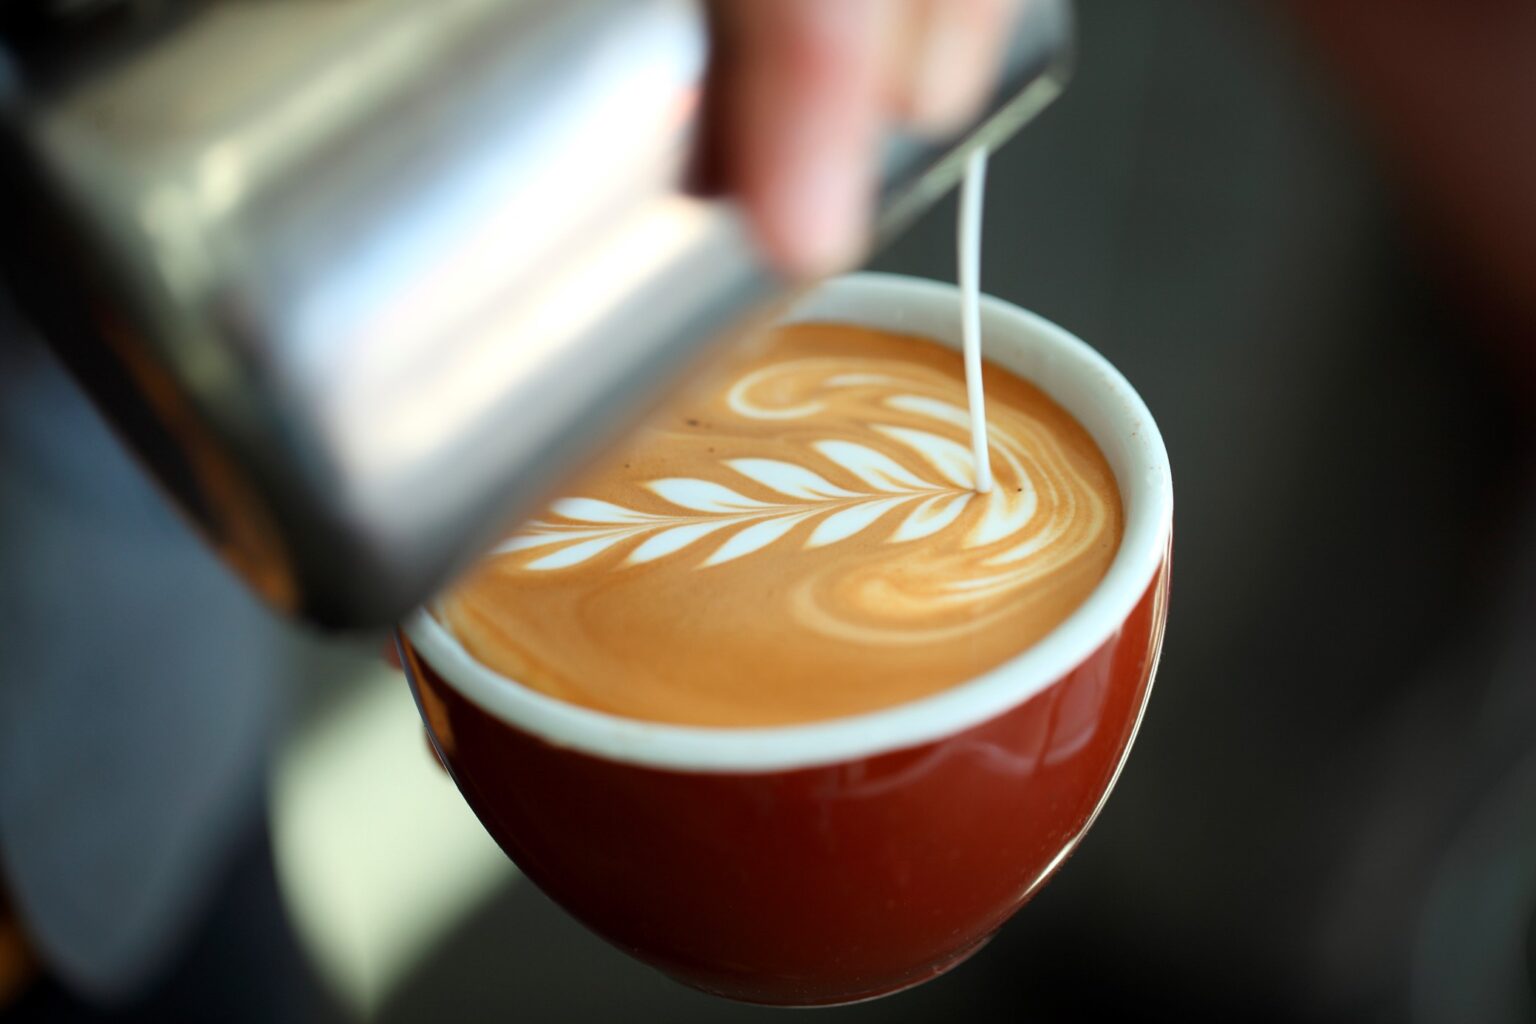 Aantal koffiebars verdubbeld in afgelopen vijf jaar